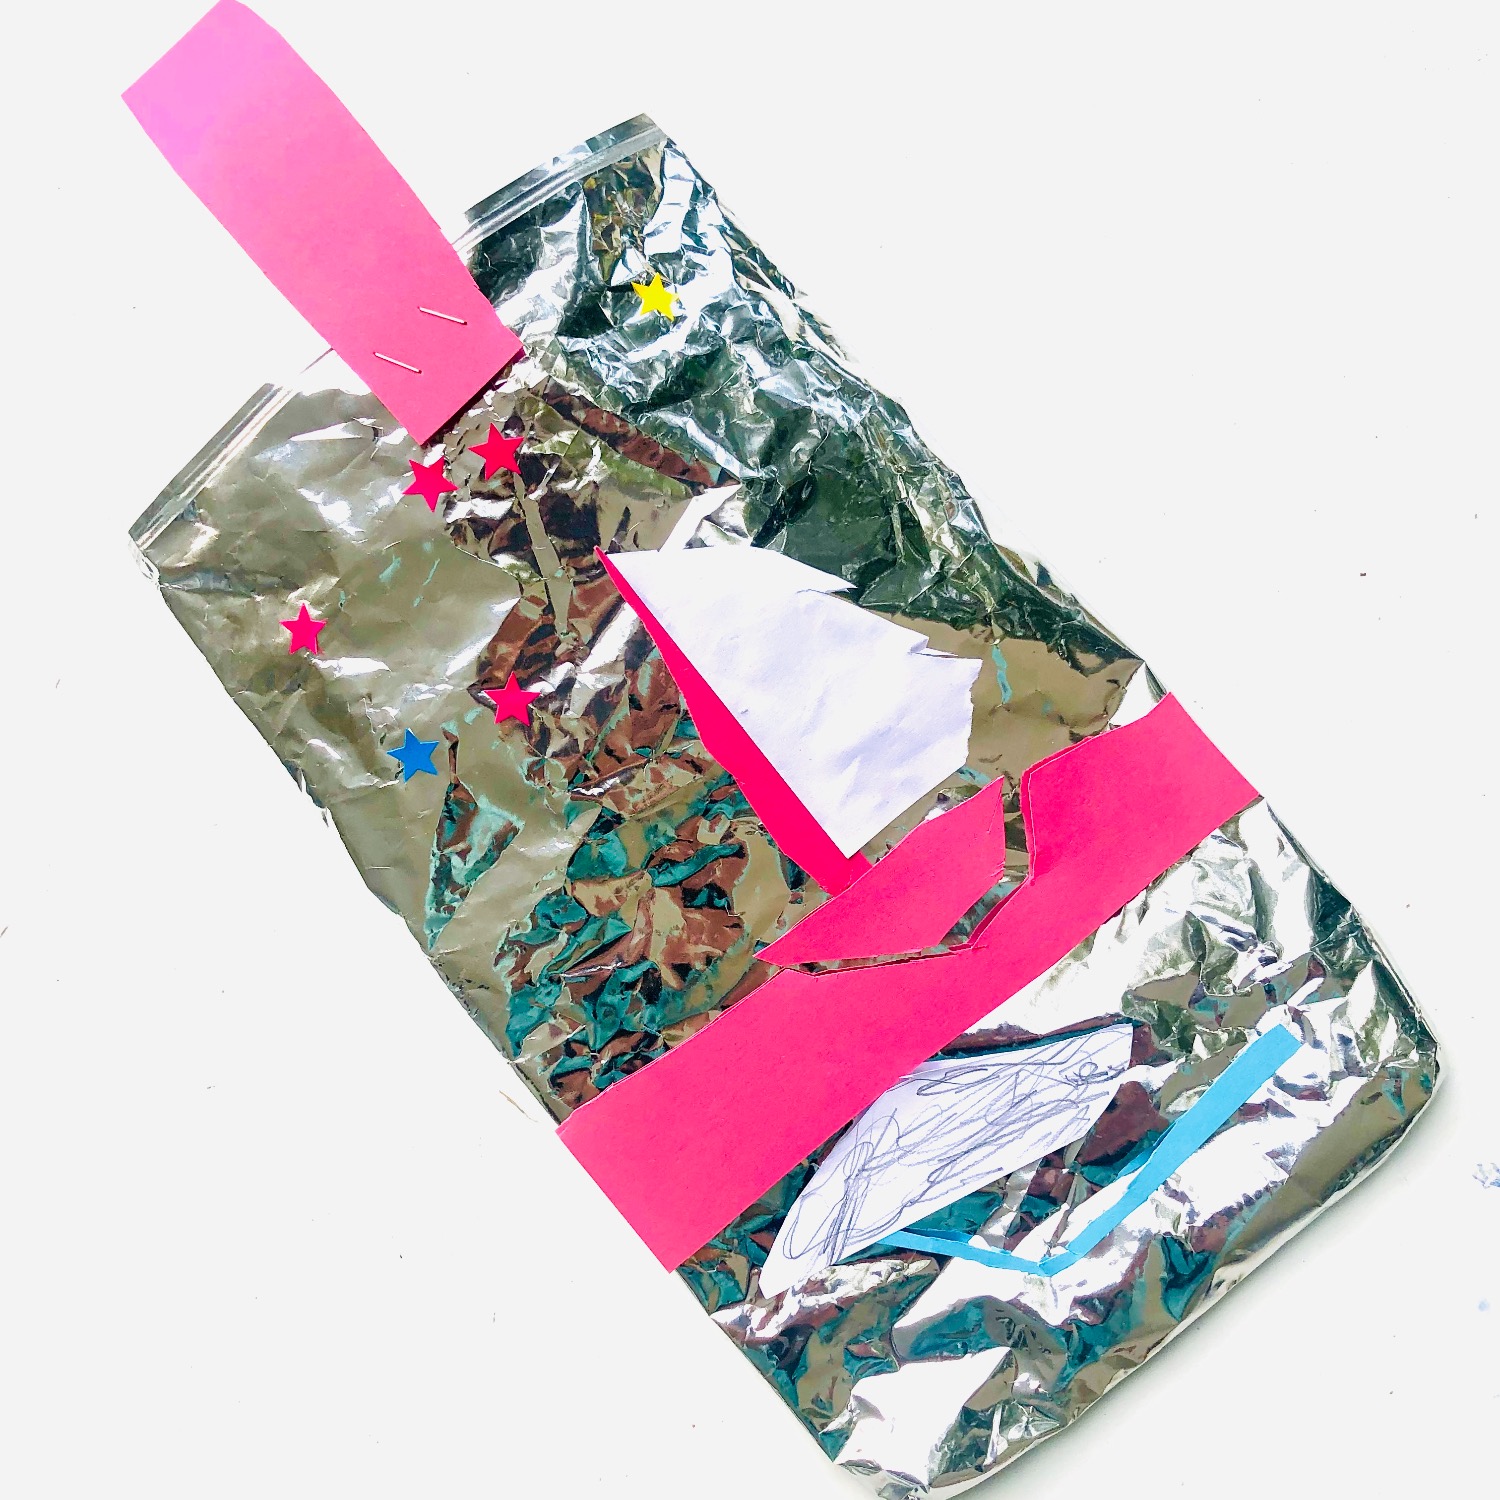 Titelbild zur Bastel- und DIY-Idee für Kinder '(408) Tasche basteln aus einer Chipstüte'